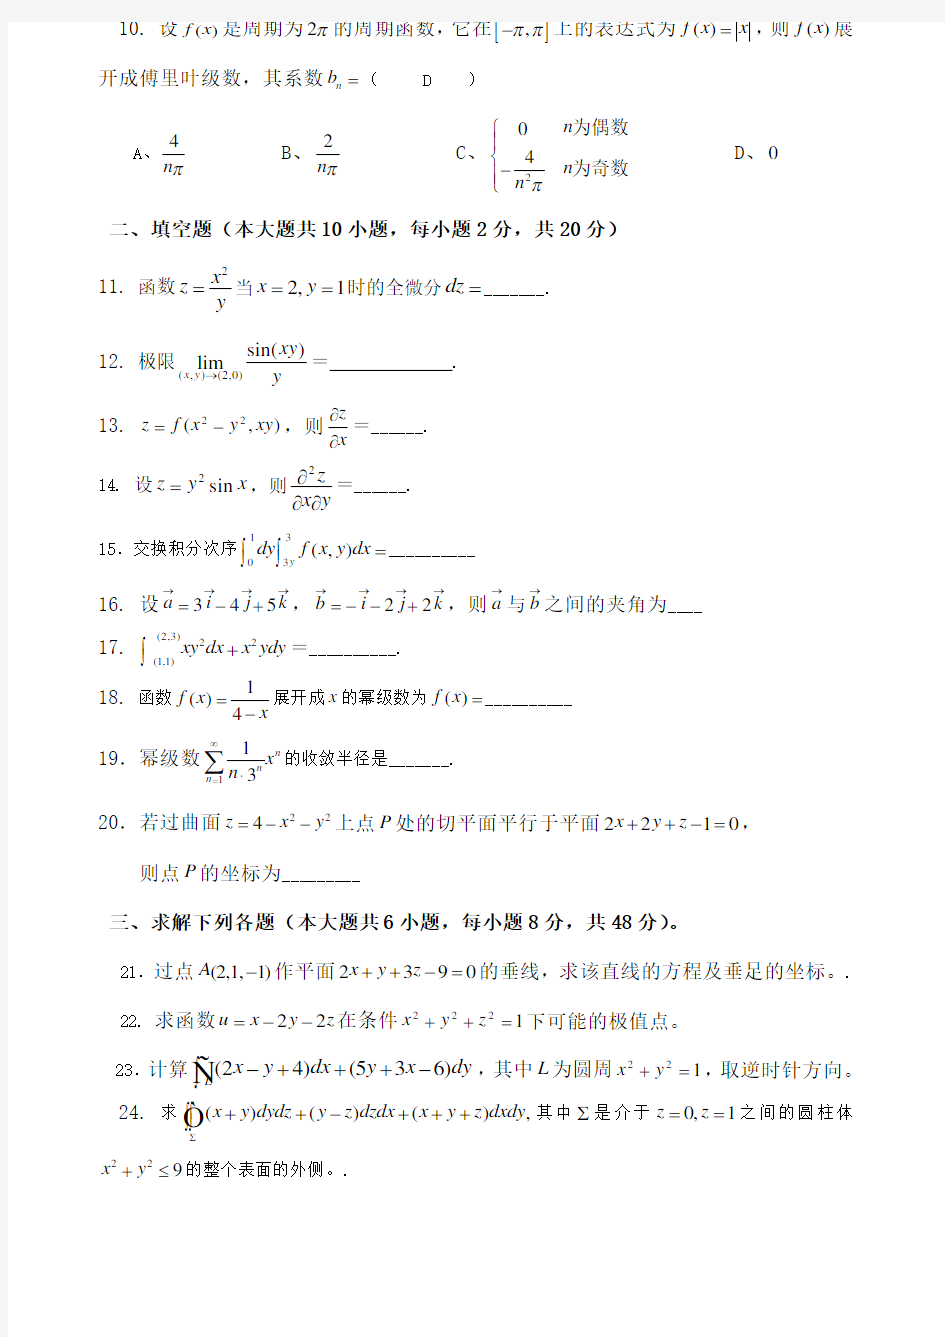 重庆理工大学 高等数学下试卷一答案已附后